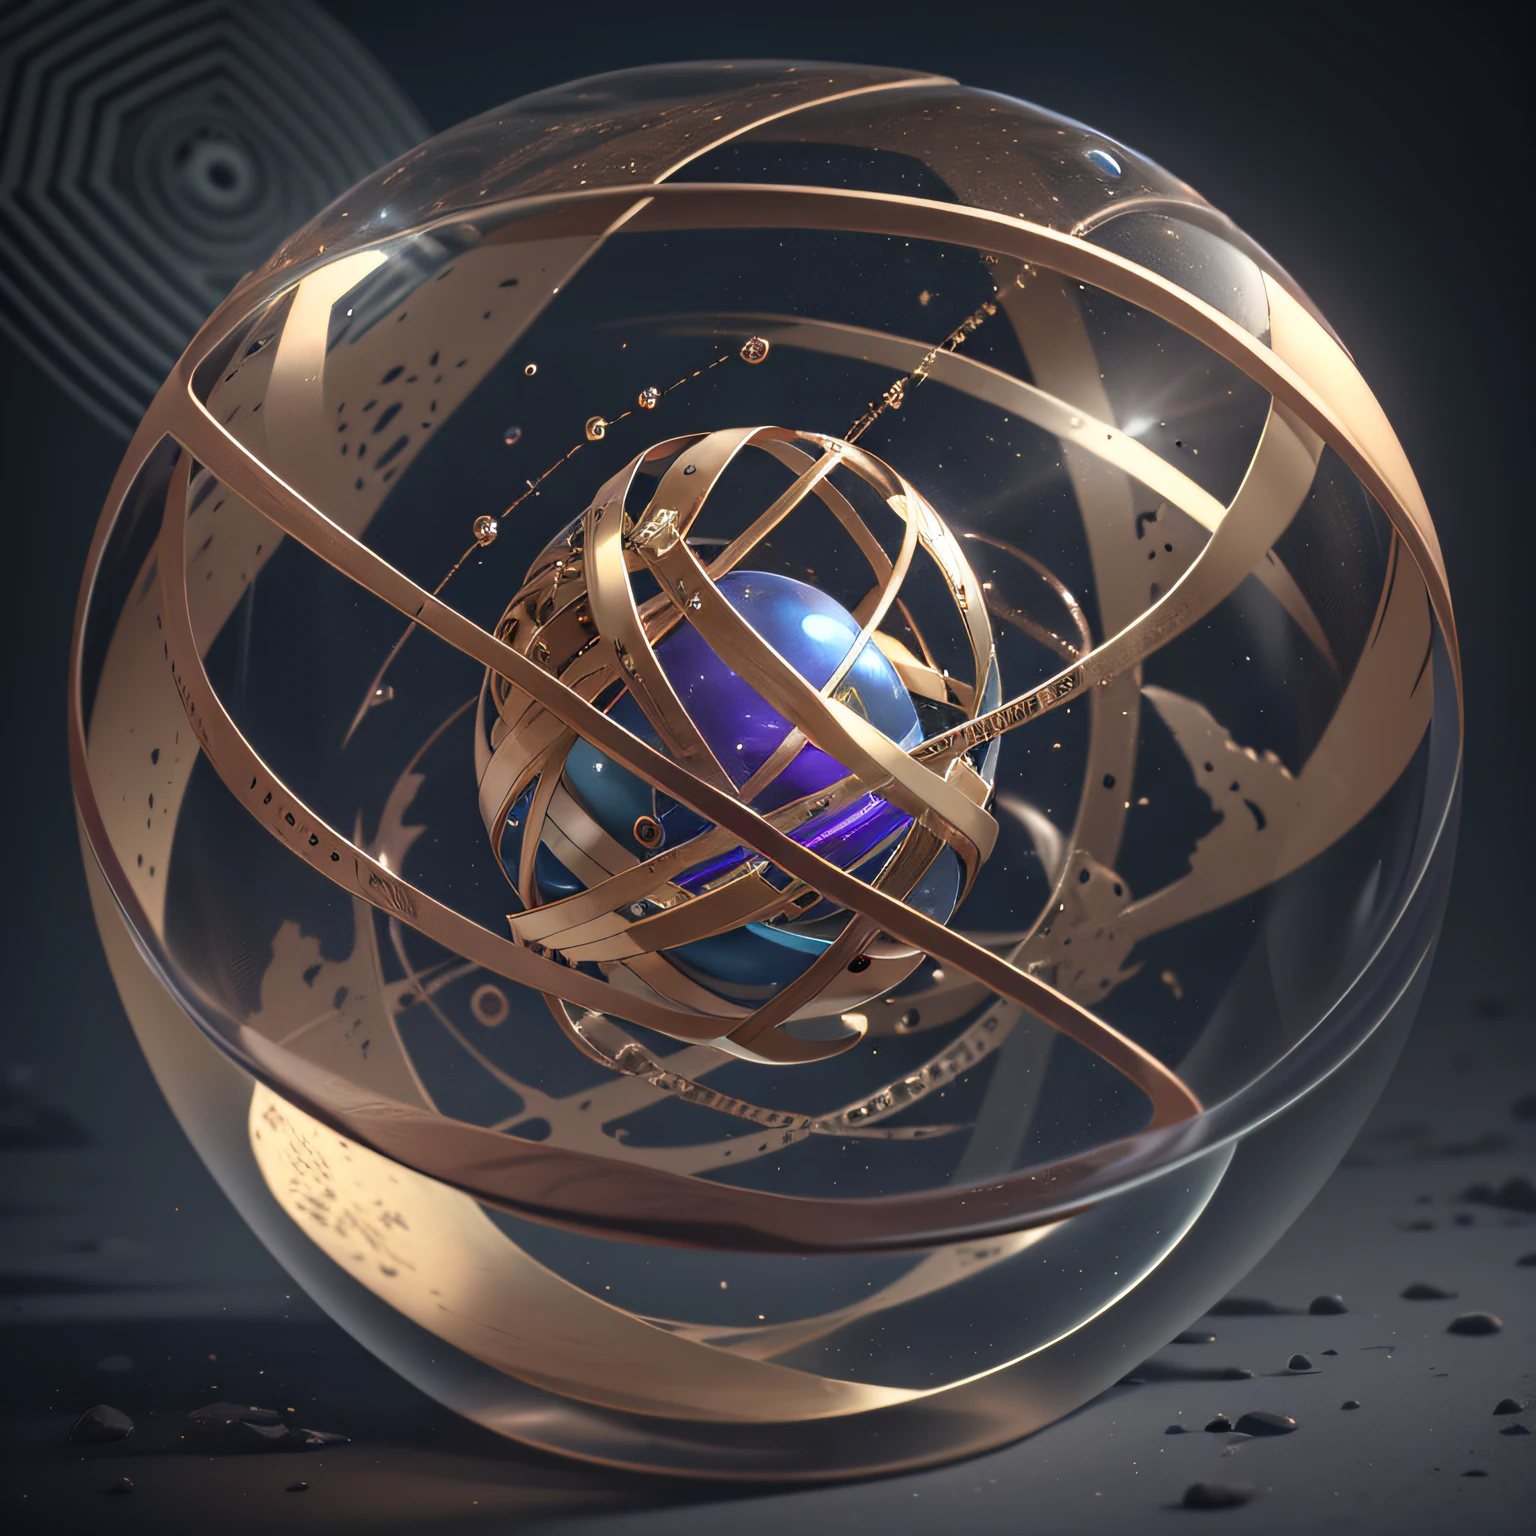 (아름다운 sphere with high transparency), 아름다운, 둥근 크리스탈, 울트라 디테일, 놀라운 조명, 하이퍼 디테일, 8K, 언리얼 엔진 5, 3D 렌더링, 운세, 구 내부에서 투명하게 빛나는